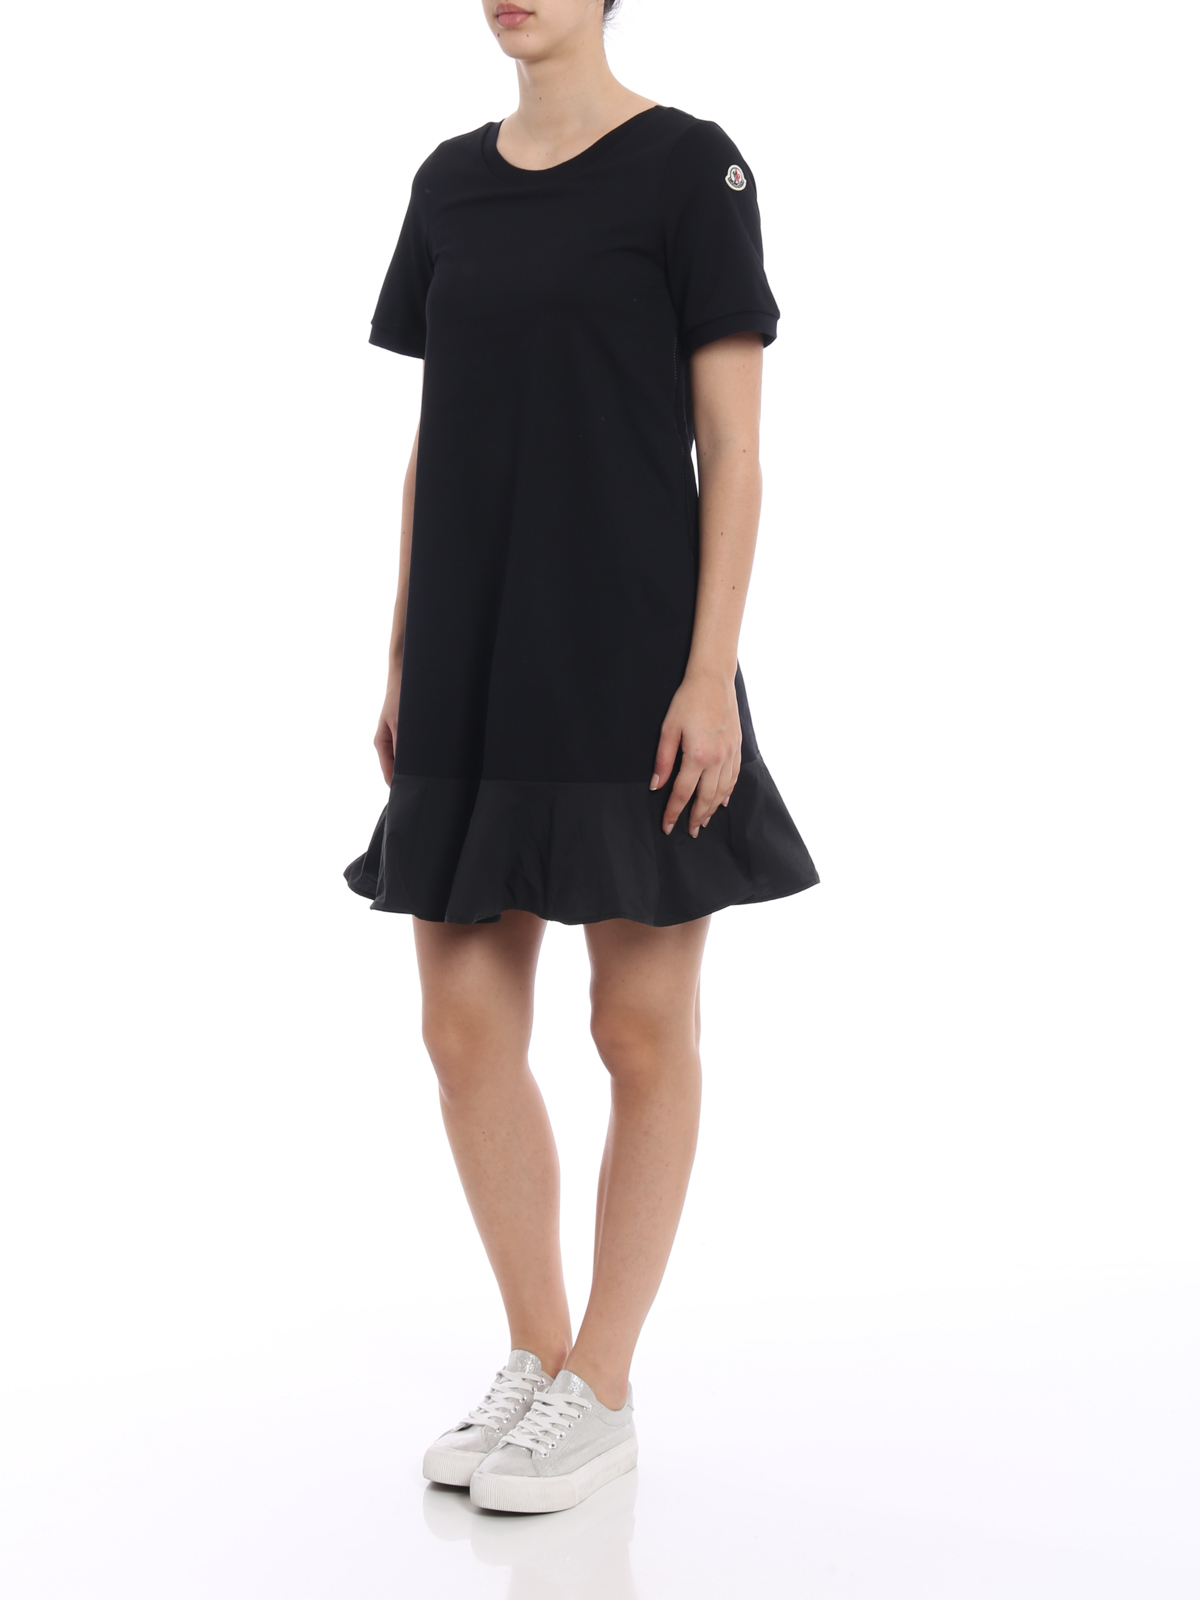 Moncler - Expandable cotton black dress 